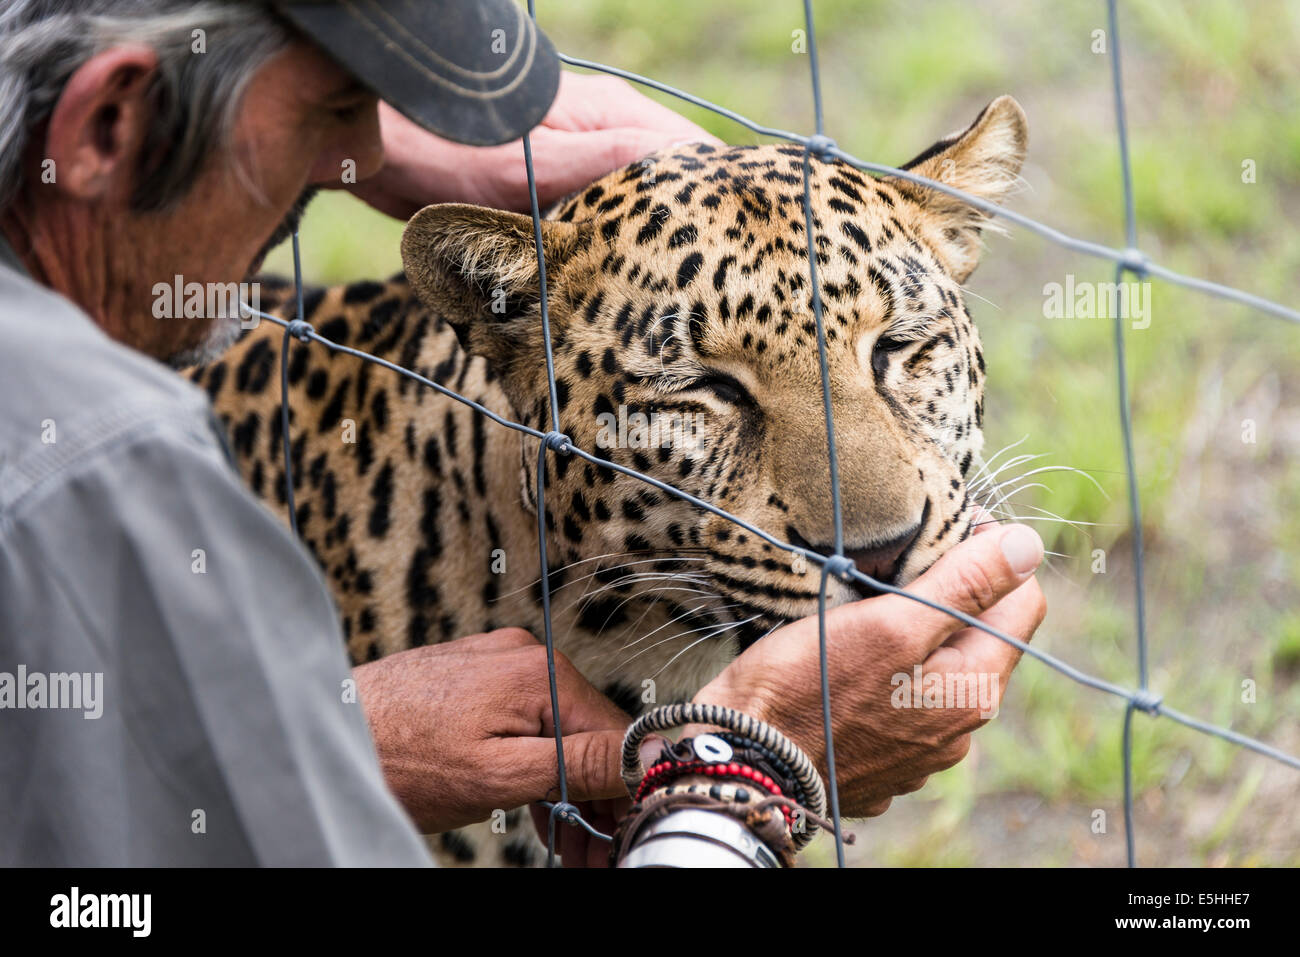 Cheetah (Acinonyx jubatus), Kwa Cheetah Breeding Project, Nambiti Reserve, Kwa-Zulu Natal, South Africa Stock Photo